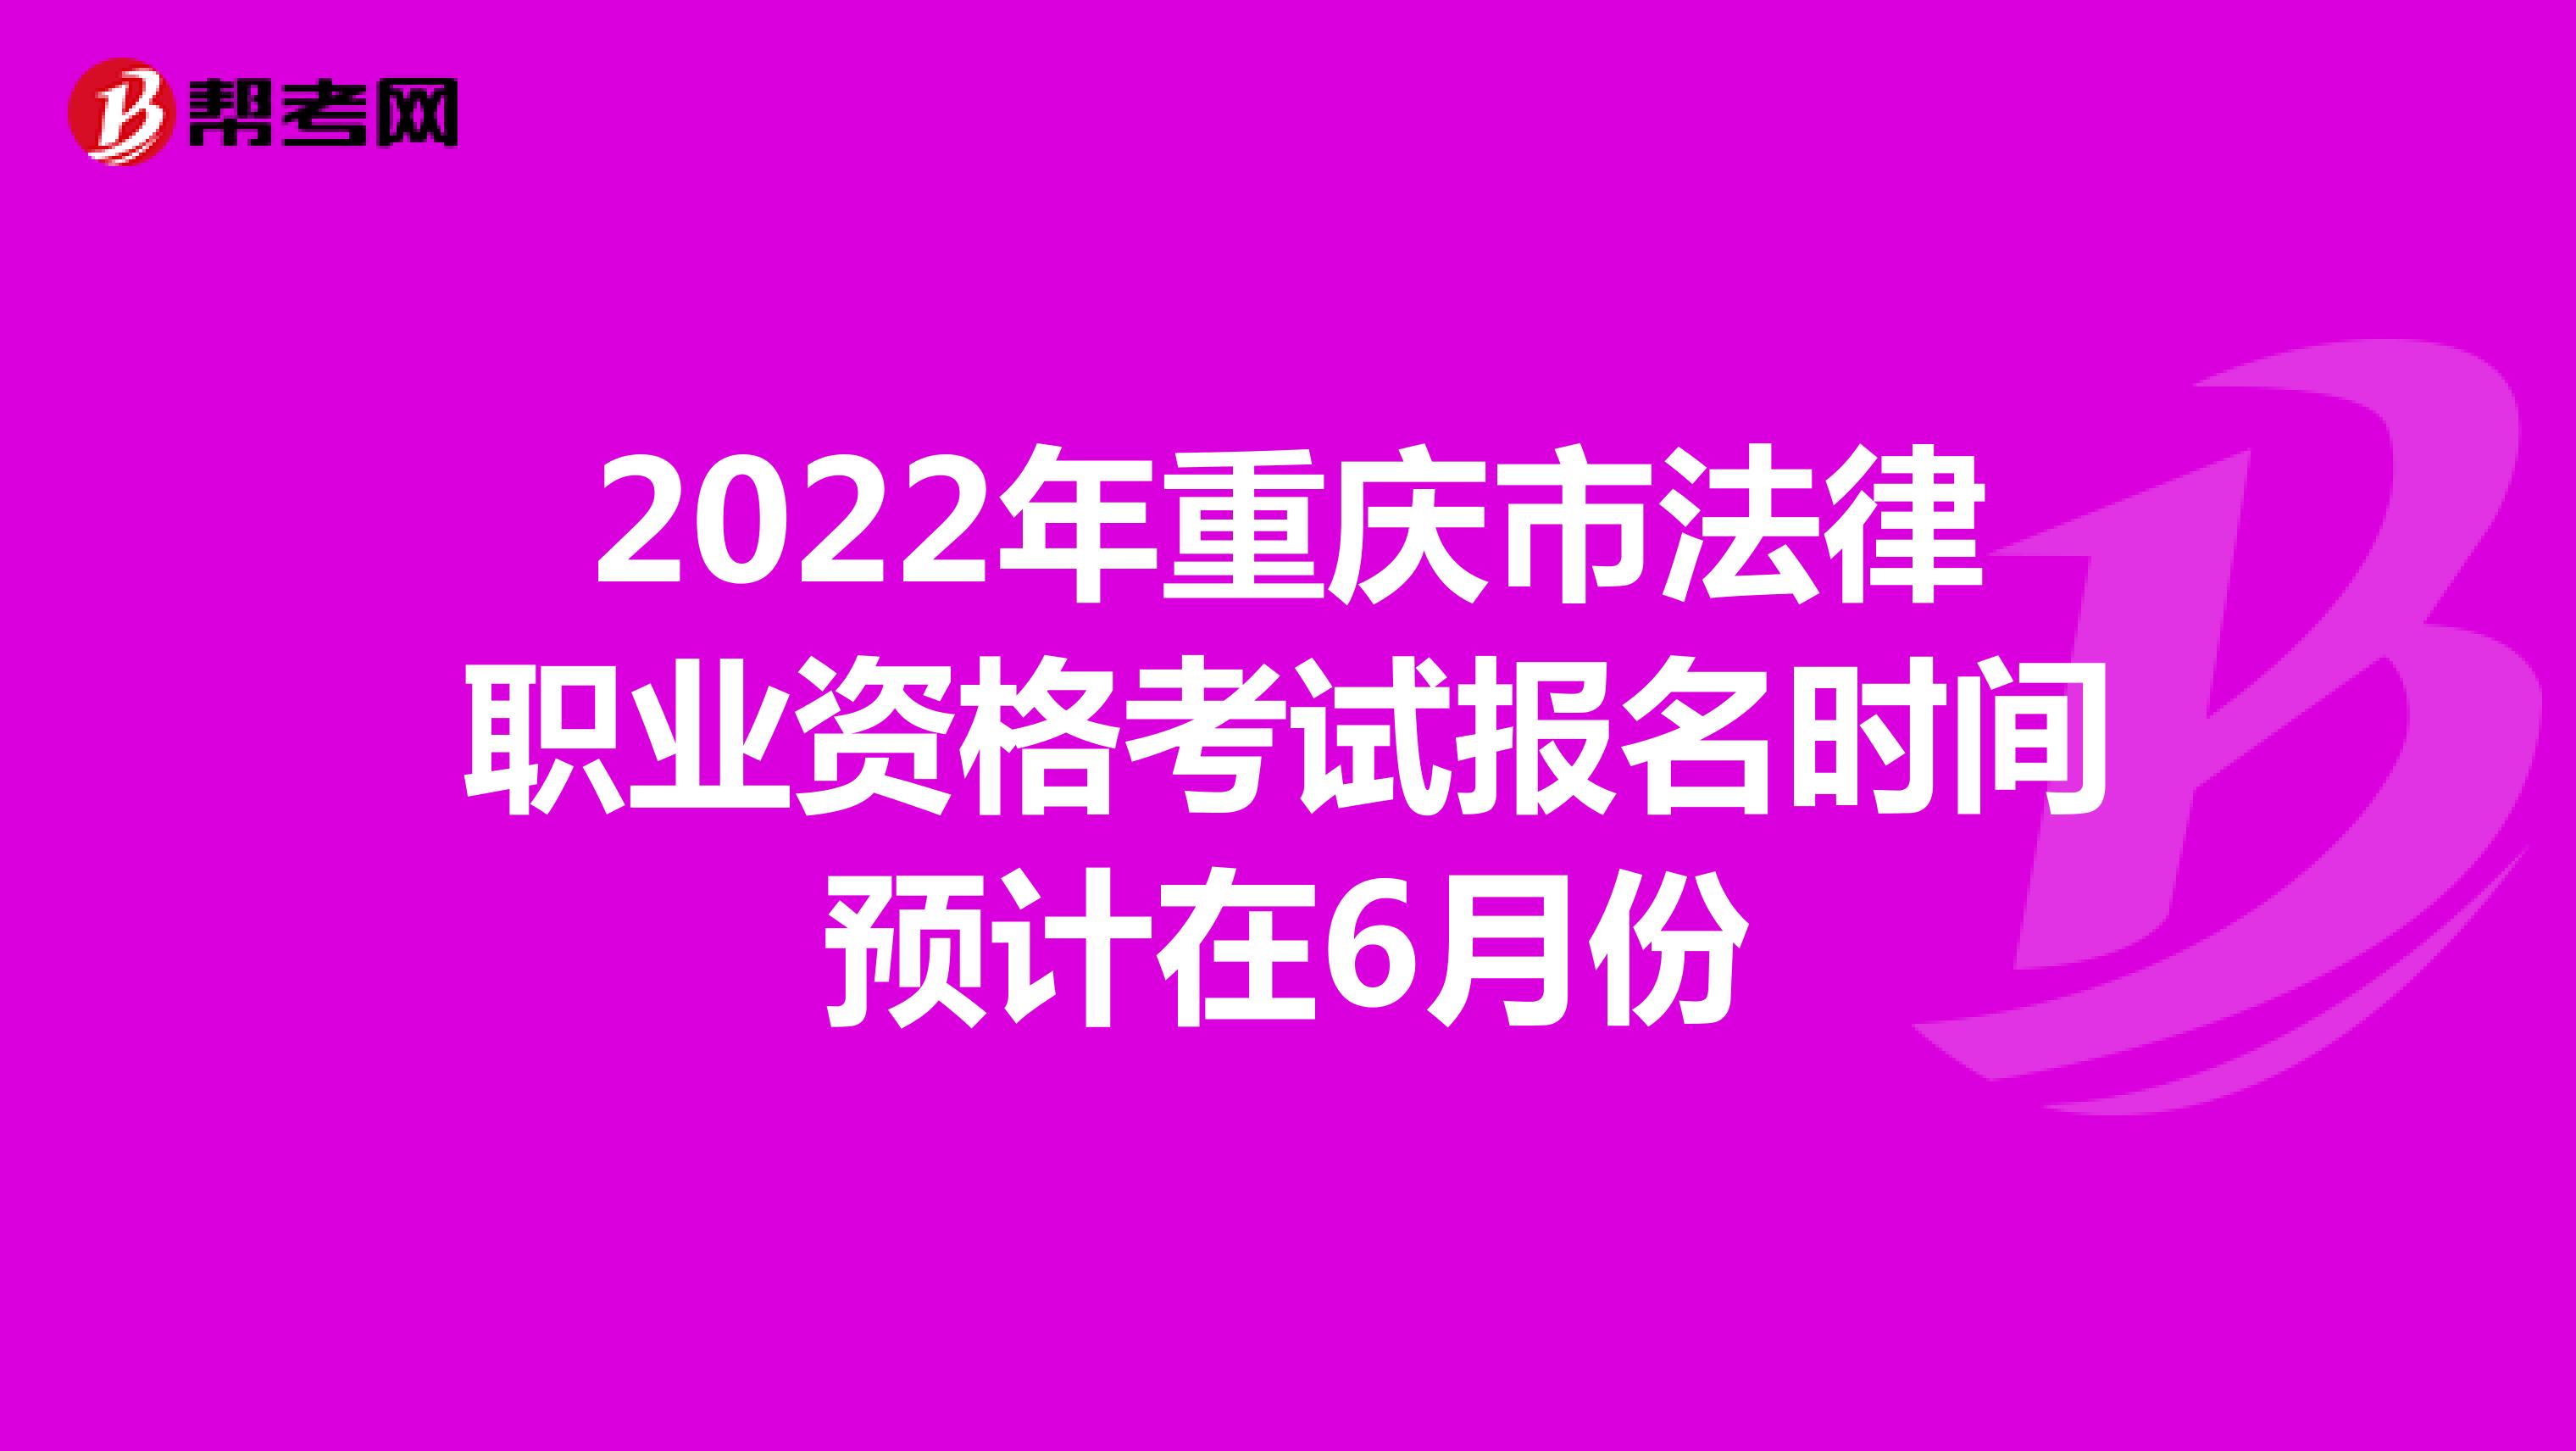 2022年重庆市法律职业资格考试报名时间预计在6月份